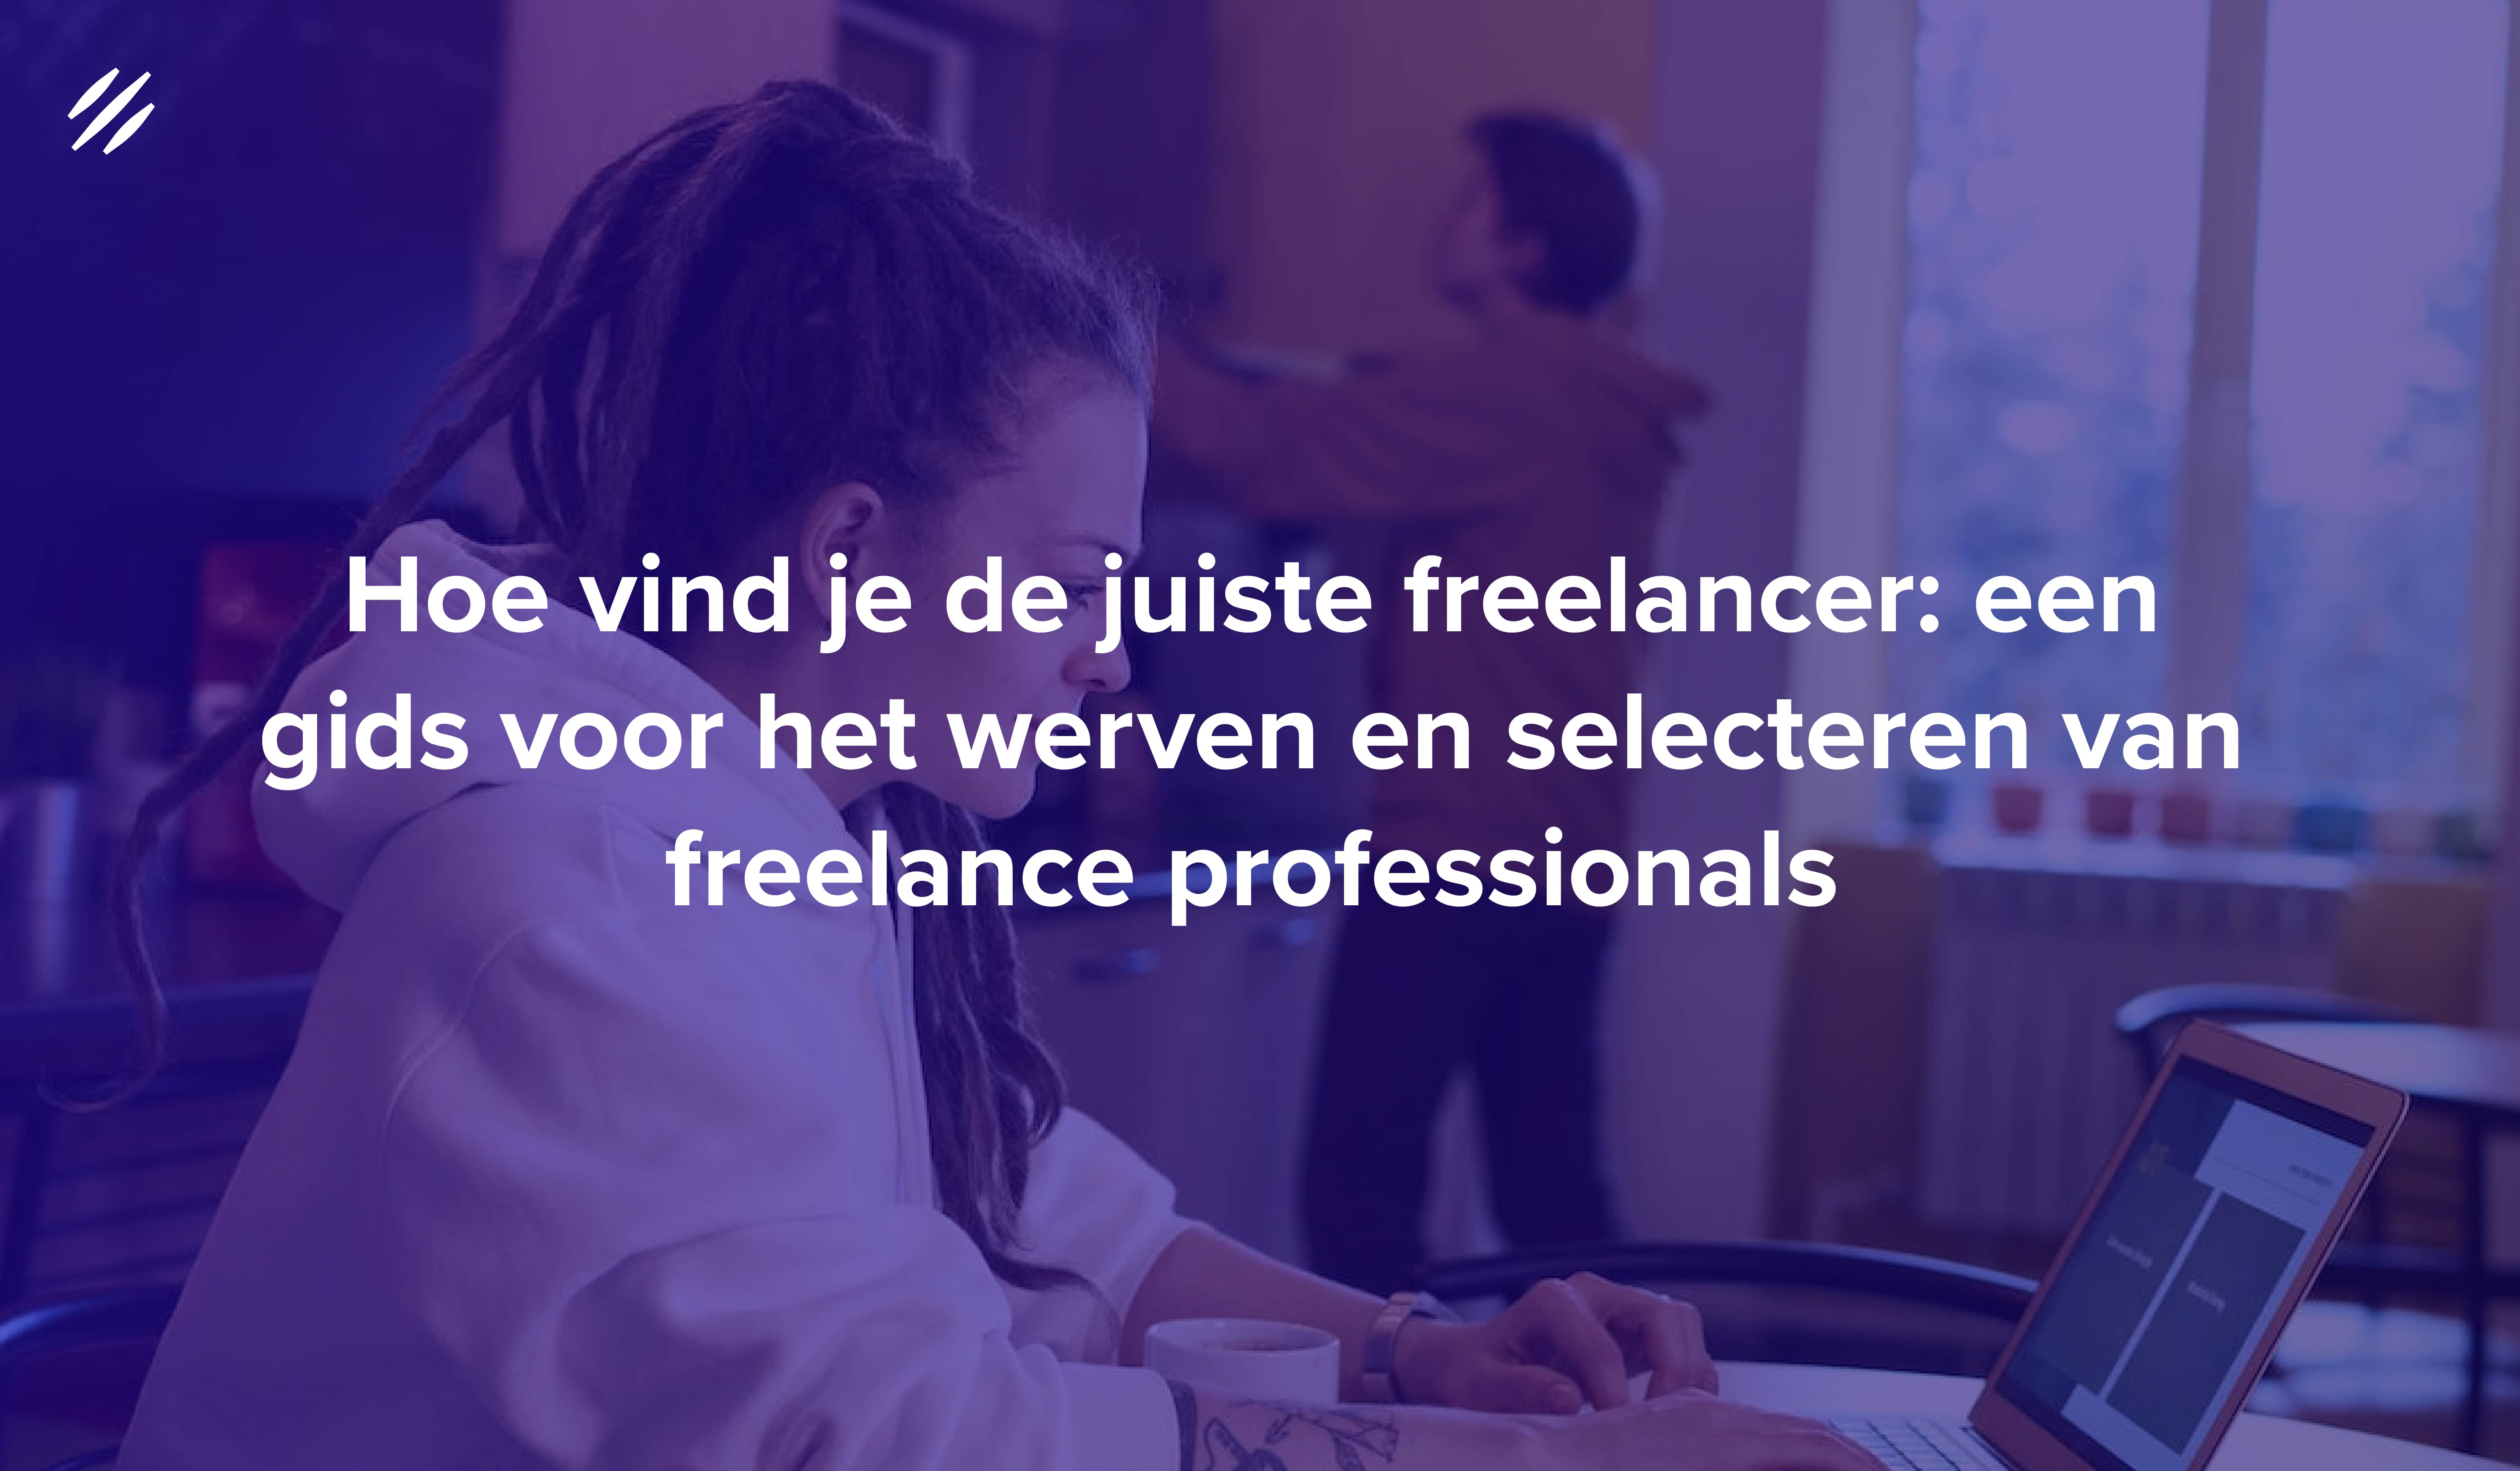 Hoe vind je de juiste freelancer: een gids voor het werven en selecteren van freelance professionals